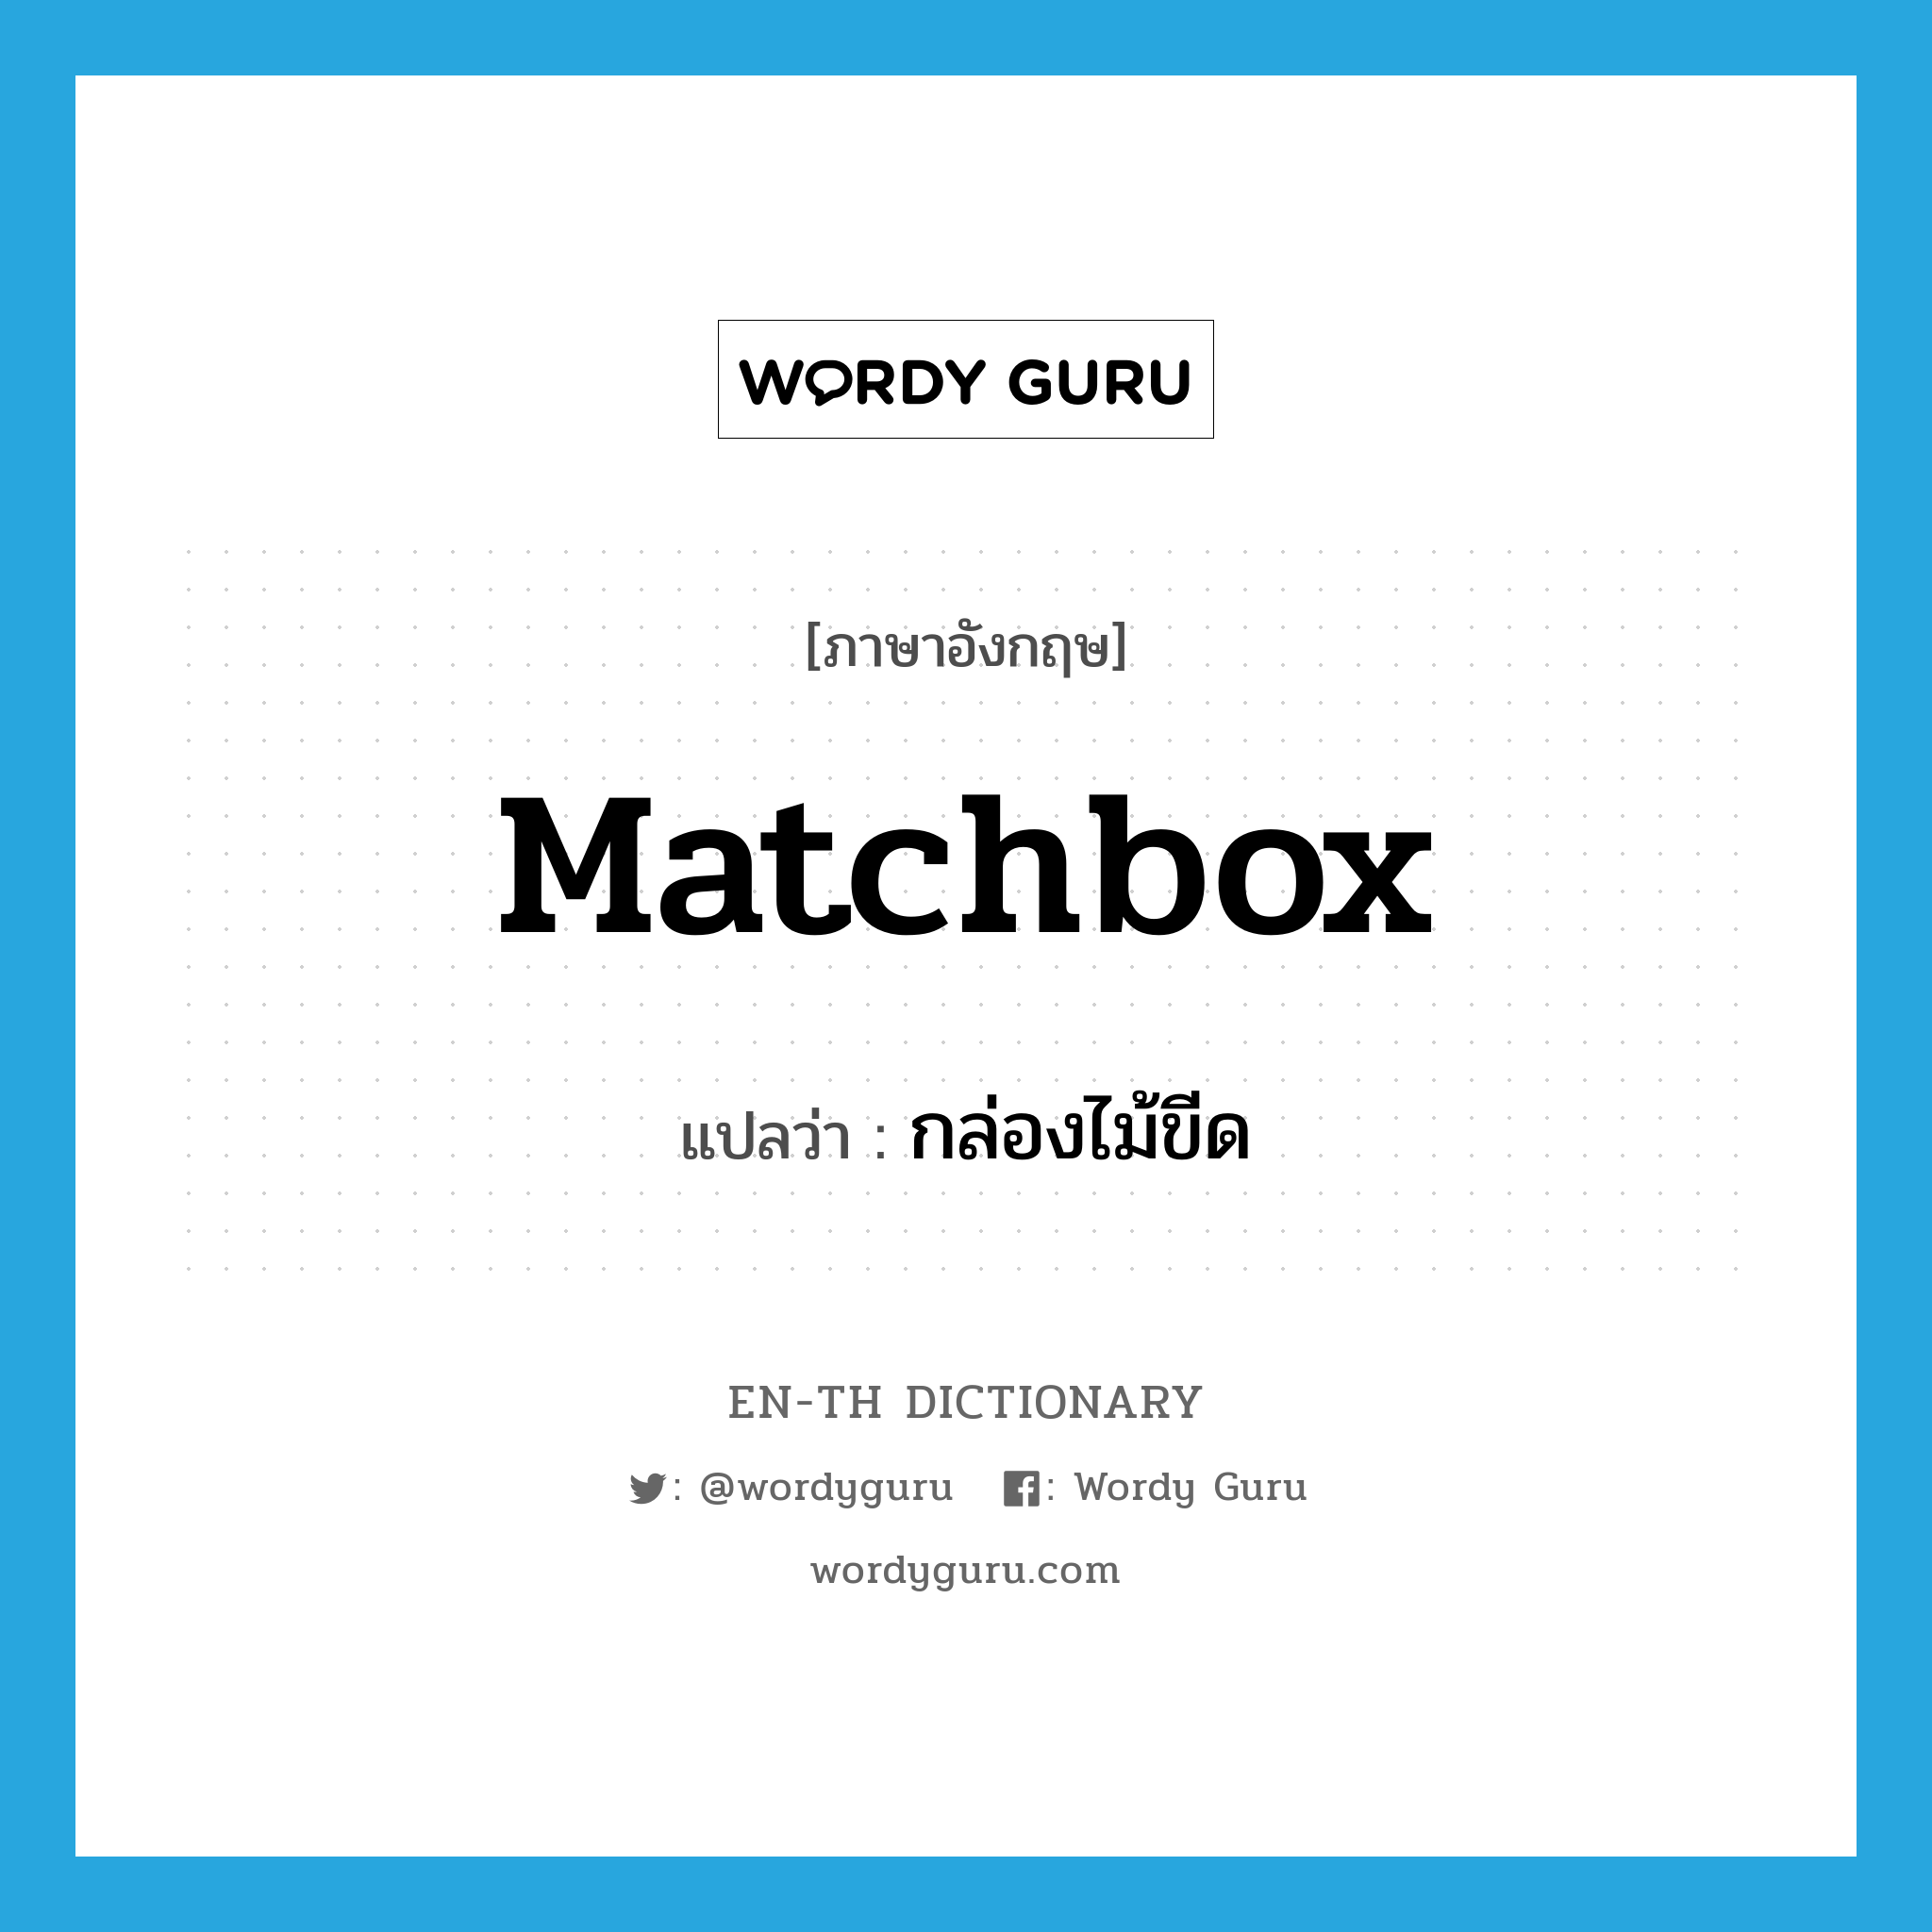 matchbox แปลว่า?, คำศัพท์ภาษาอังกฤษ matchbox แปลว่า กล่องไม้ขีด ประเภท N หมวด N